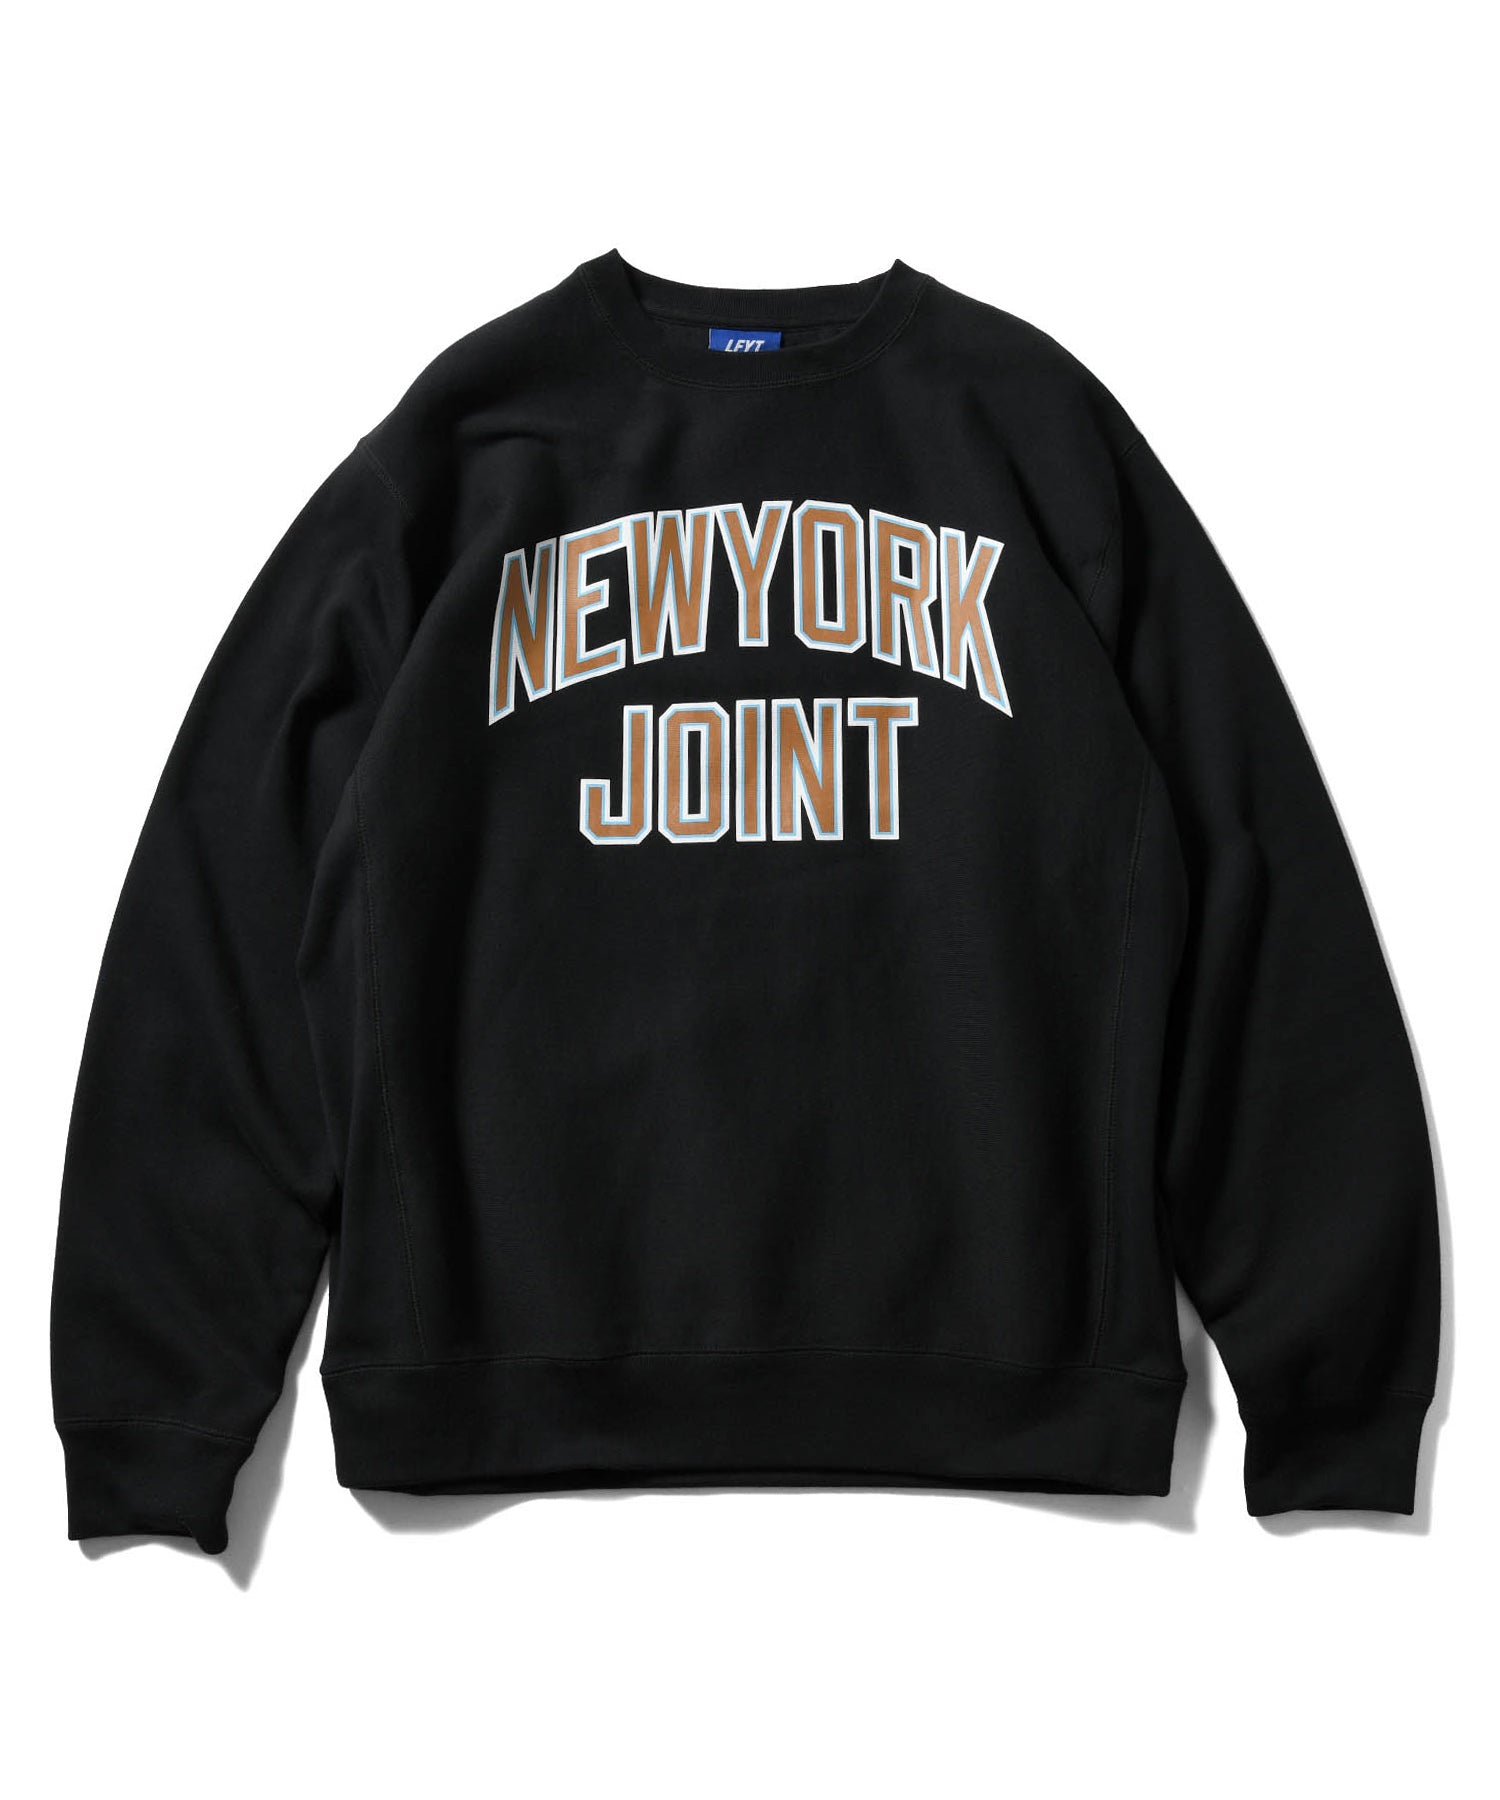 LFYT NEW YORK JOINT CREWNECK LA220705 BLACK